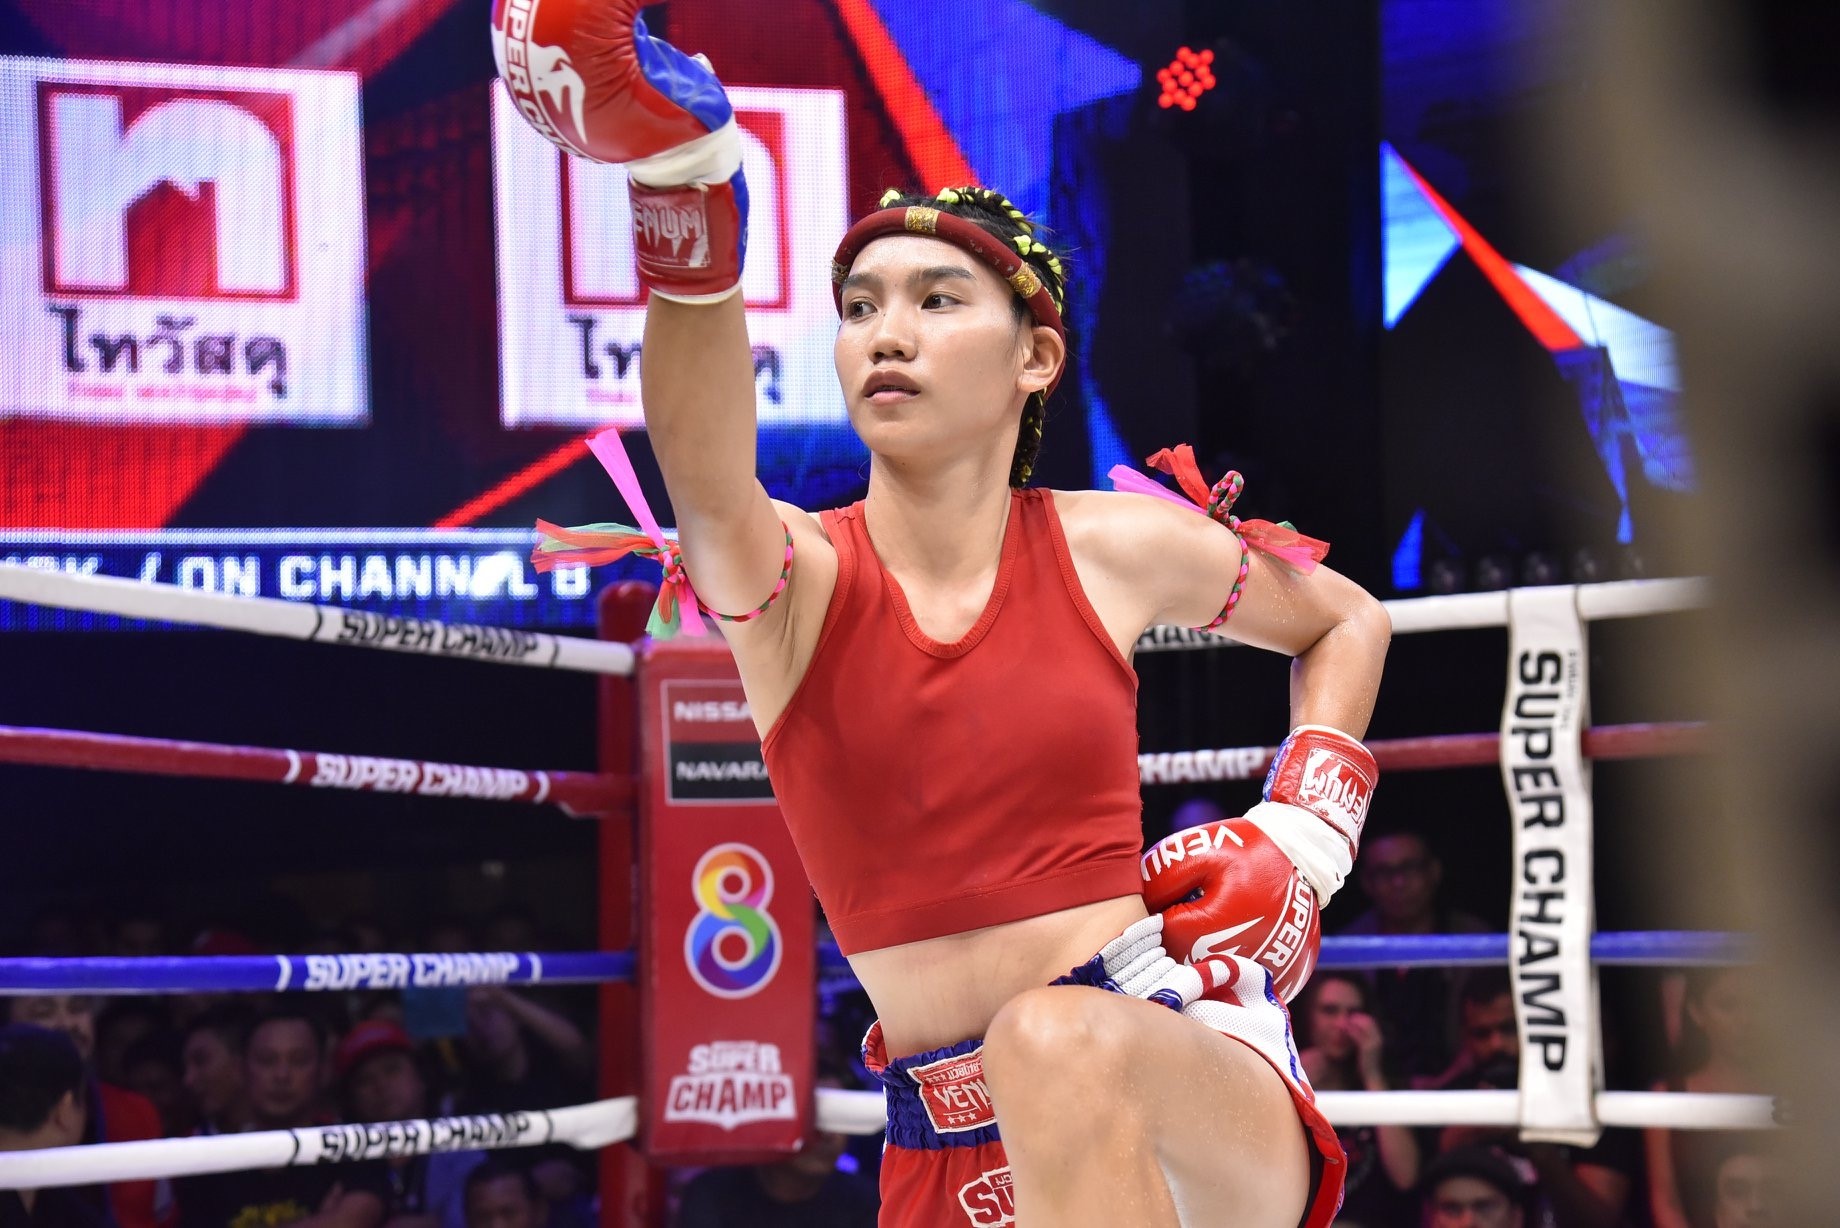 Anantara Chiang Mai’s Muay Thai World Champion Inspires More Women to